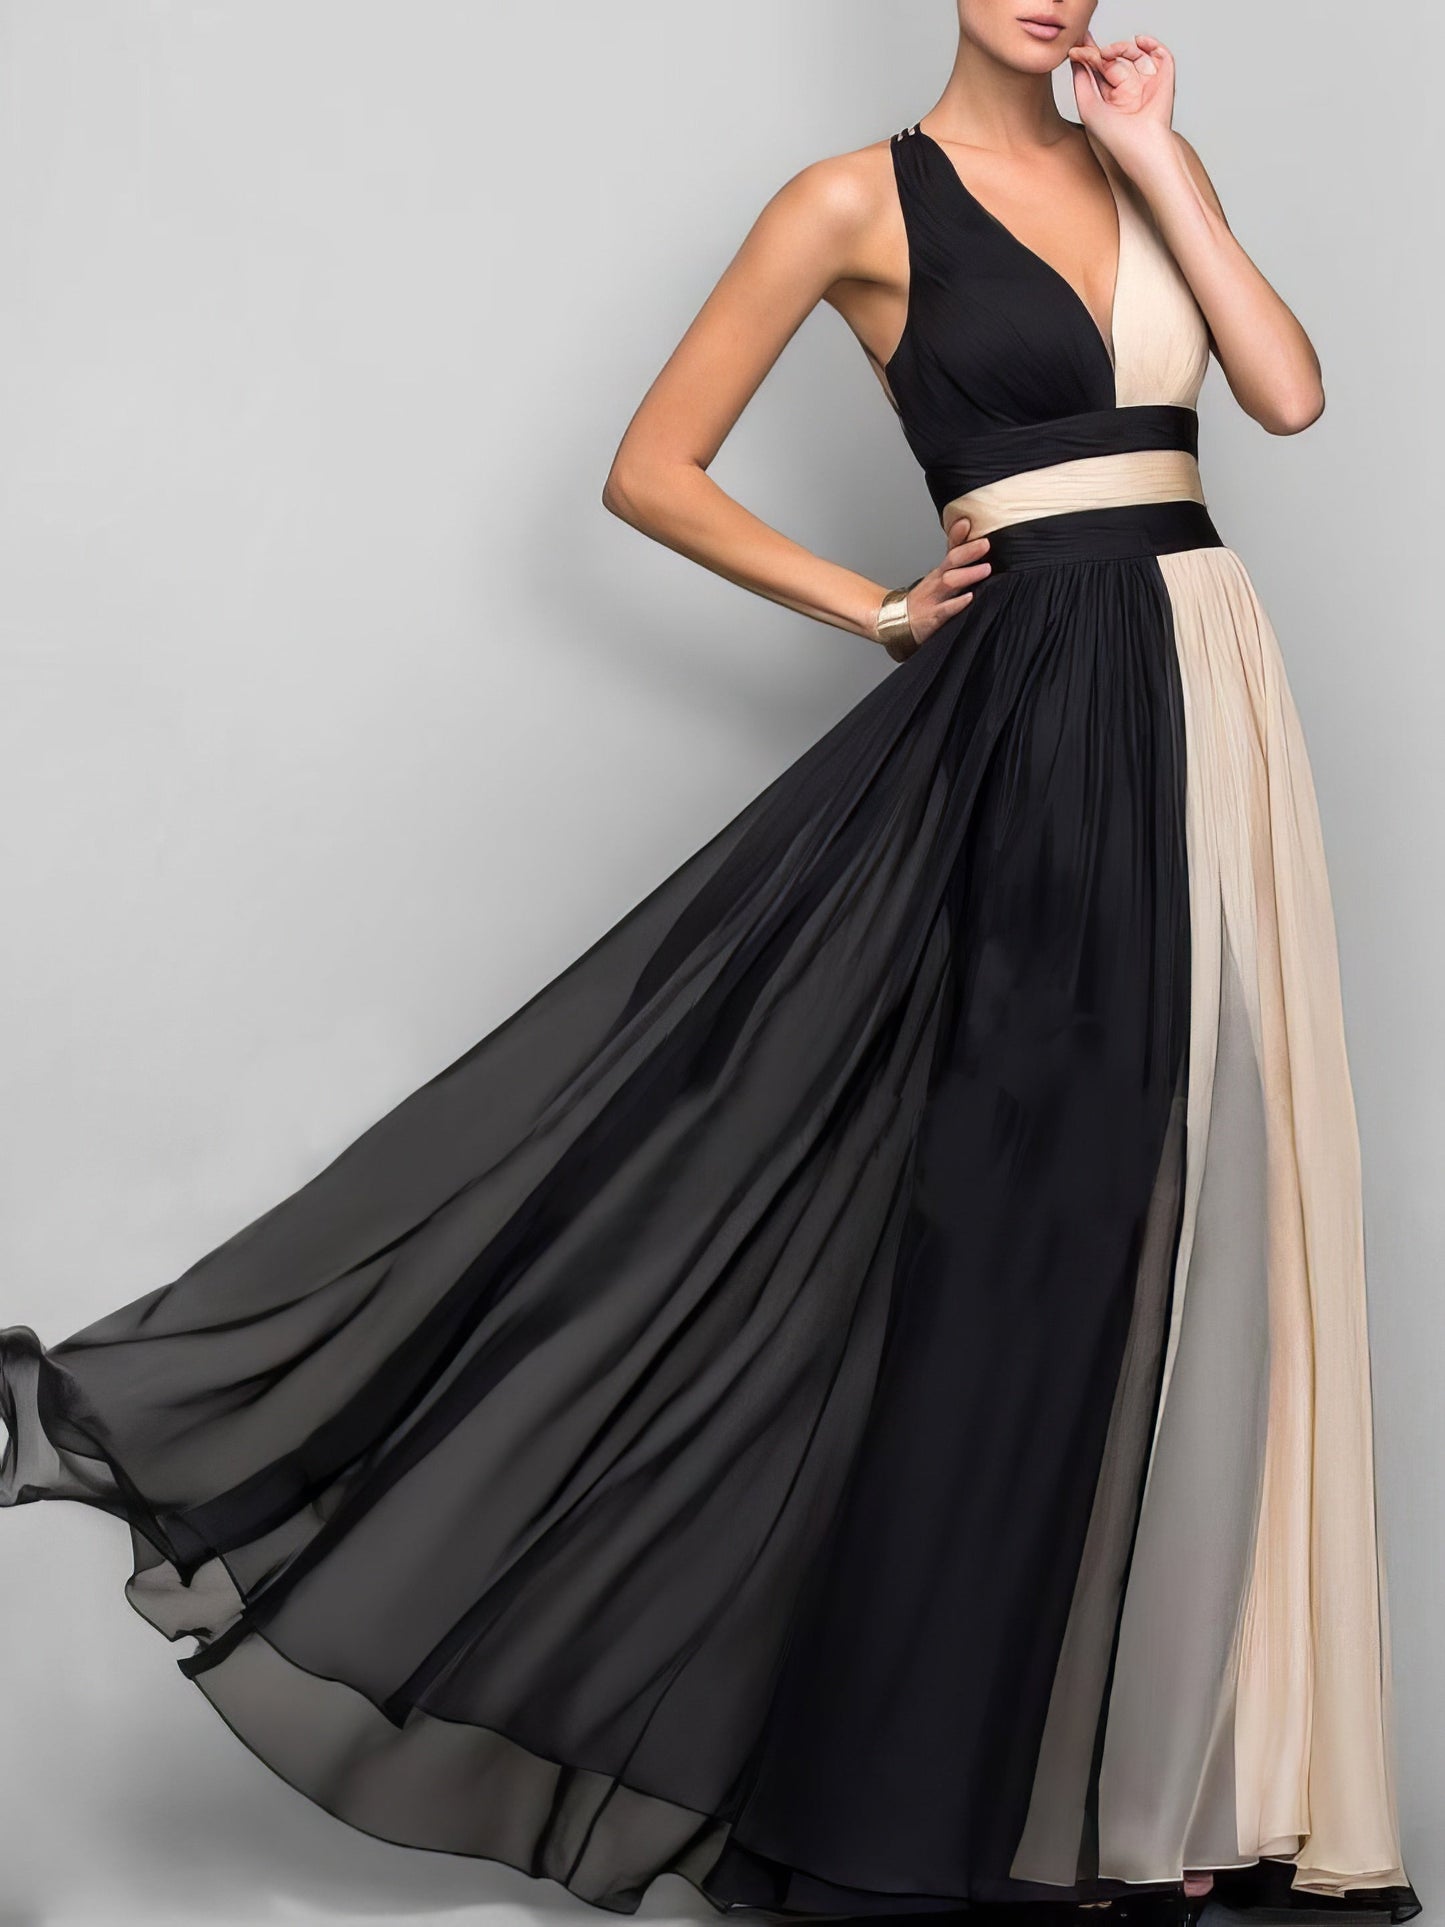 Maxi Dresses - Sleeveless Colorblock High Waist Queen Dress - MsDressly